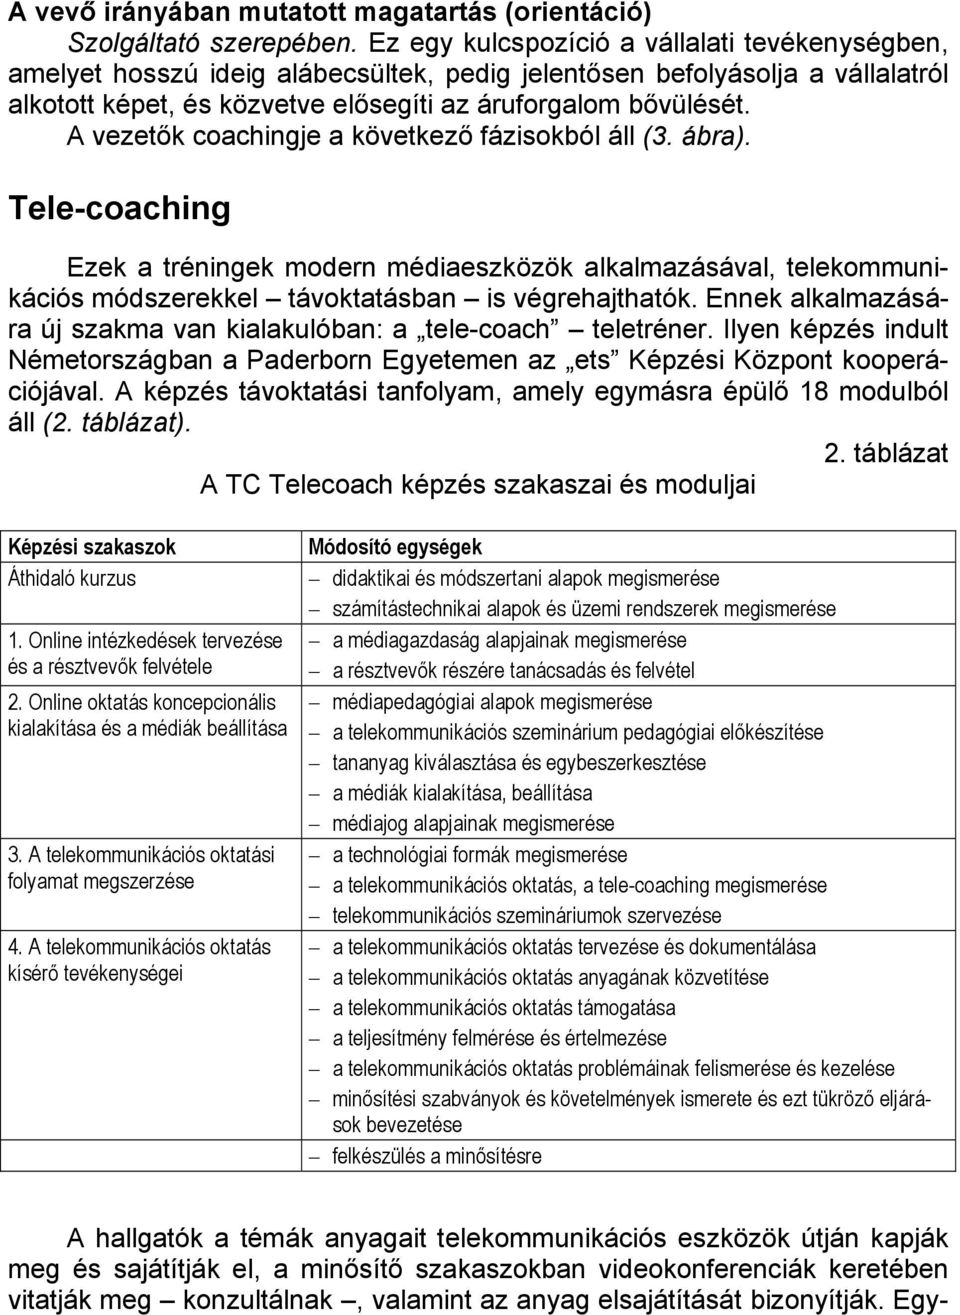 A vezetők coachingje a következő fázisokból áll (3. ábra). Tele-coaching Ezek a tréningek modern médiaeszközök alkalmazásával, telekommunikációs módszerekkel távoktatásban is végrehajthatók.